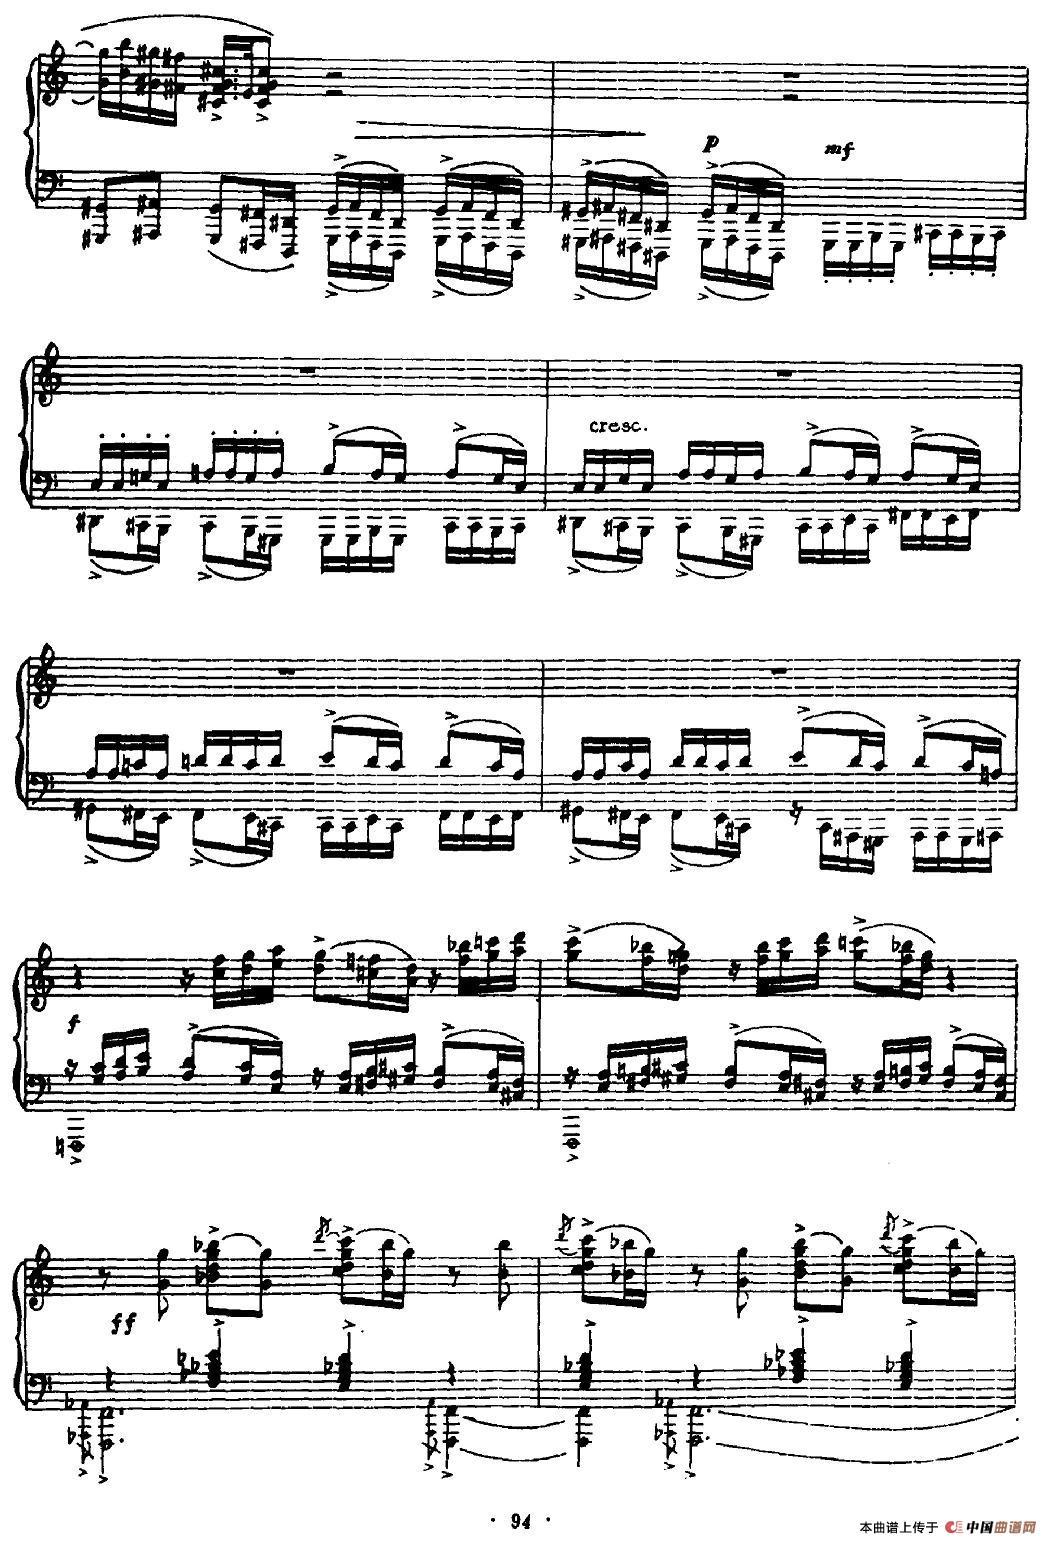 《船江号子》钢琴曲谱图分享